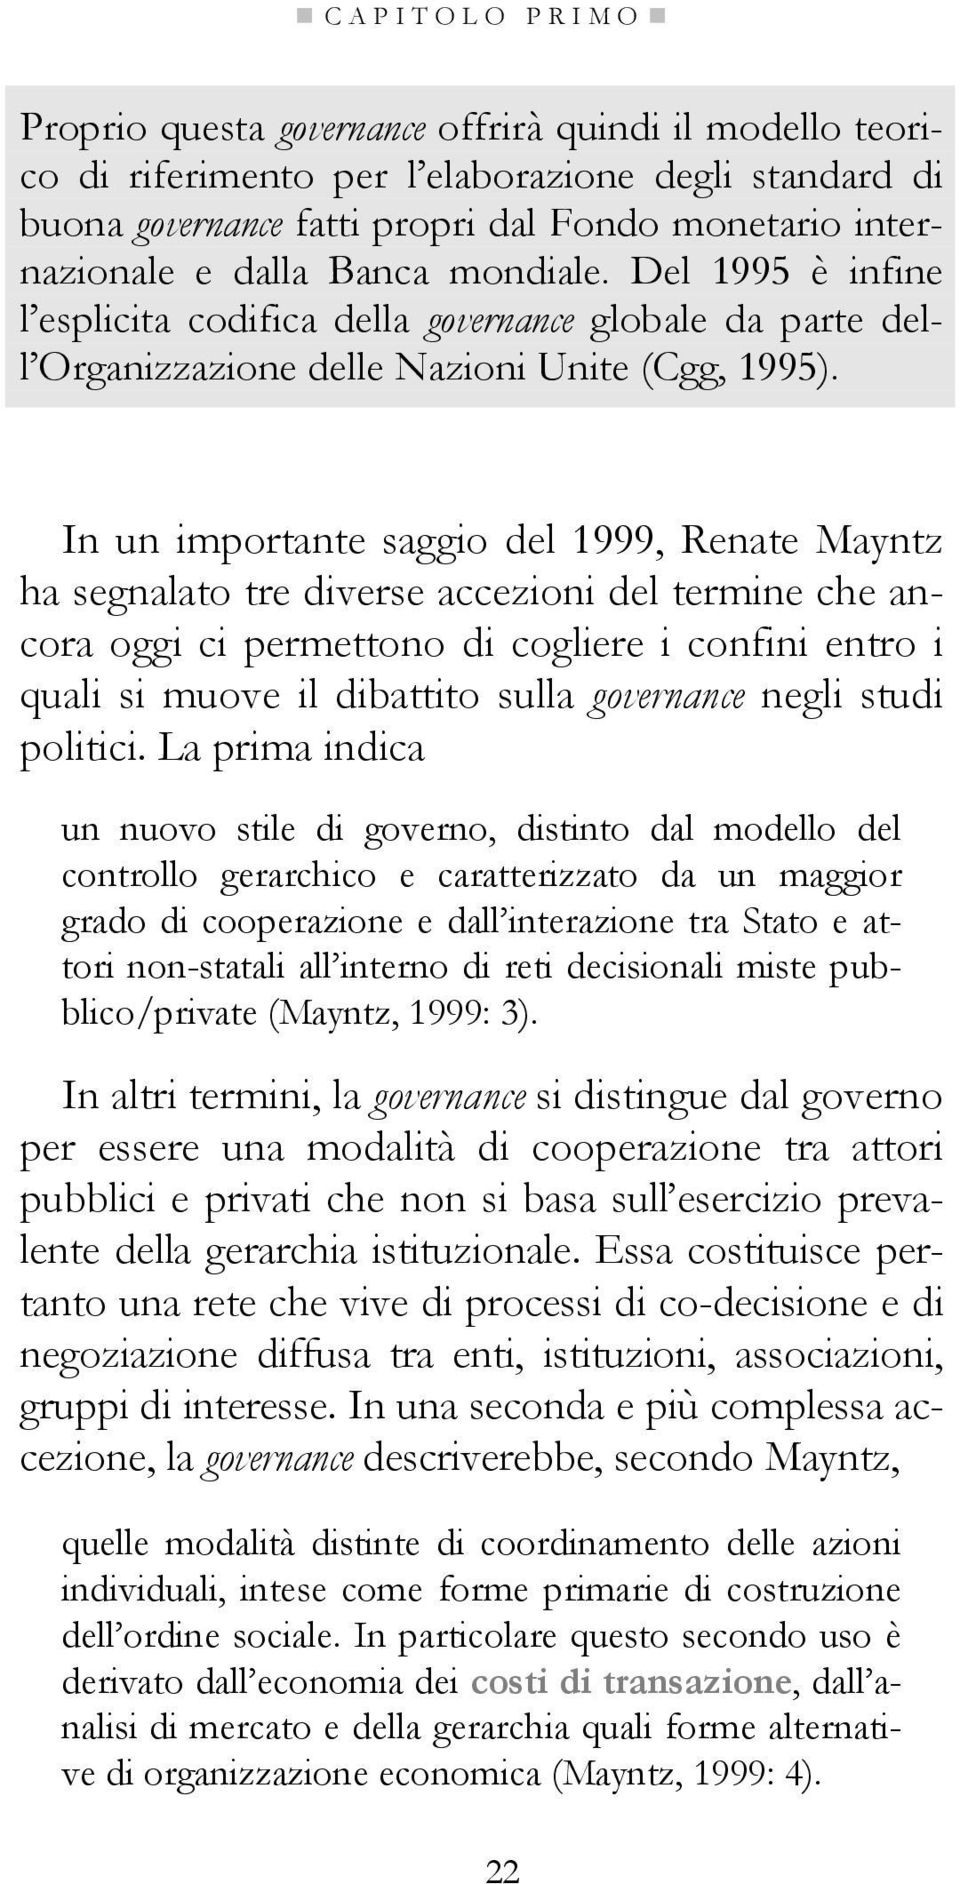 In un importante saggio del 1999, Renate Mayntz ha segnalato tre diverse accezioni del termine che ancora oggi ci permettono di cogliere i confini entro i quali si muove il dibattito sulla governance